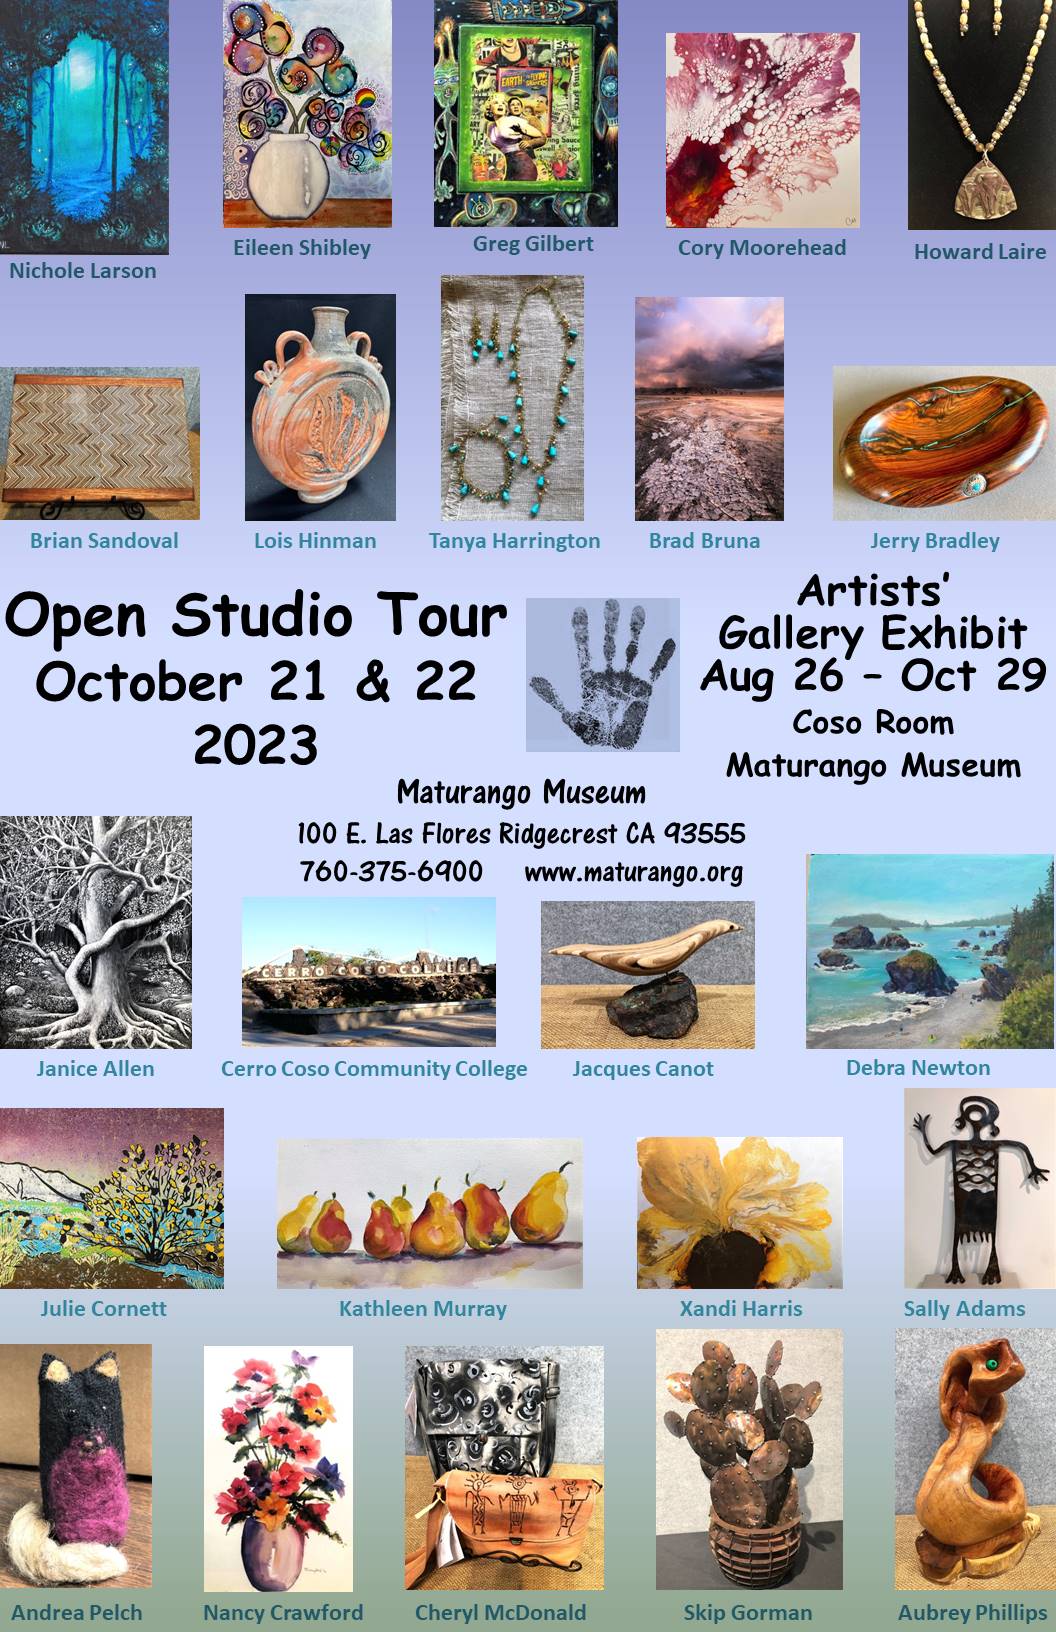 Open Studio Tour 2023 | Maturango Museum